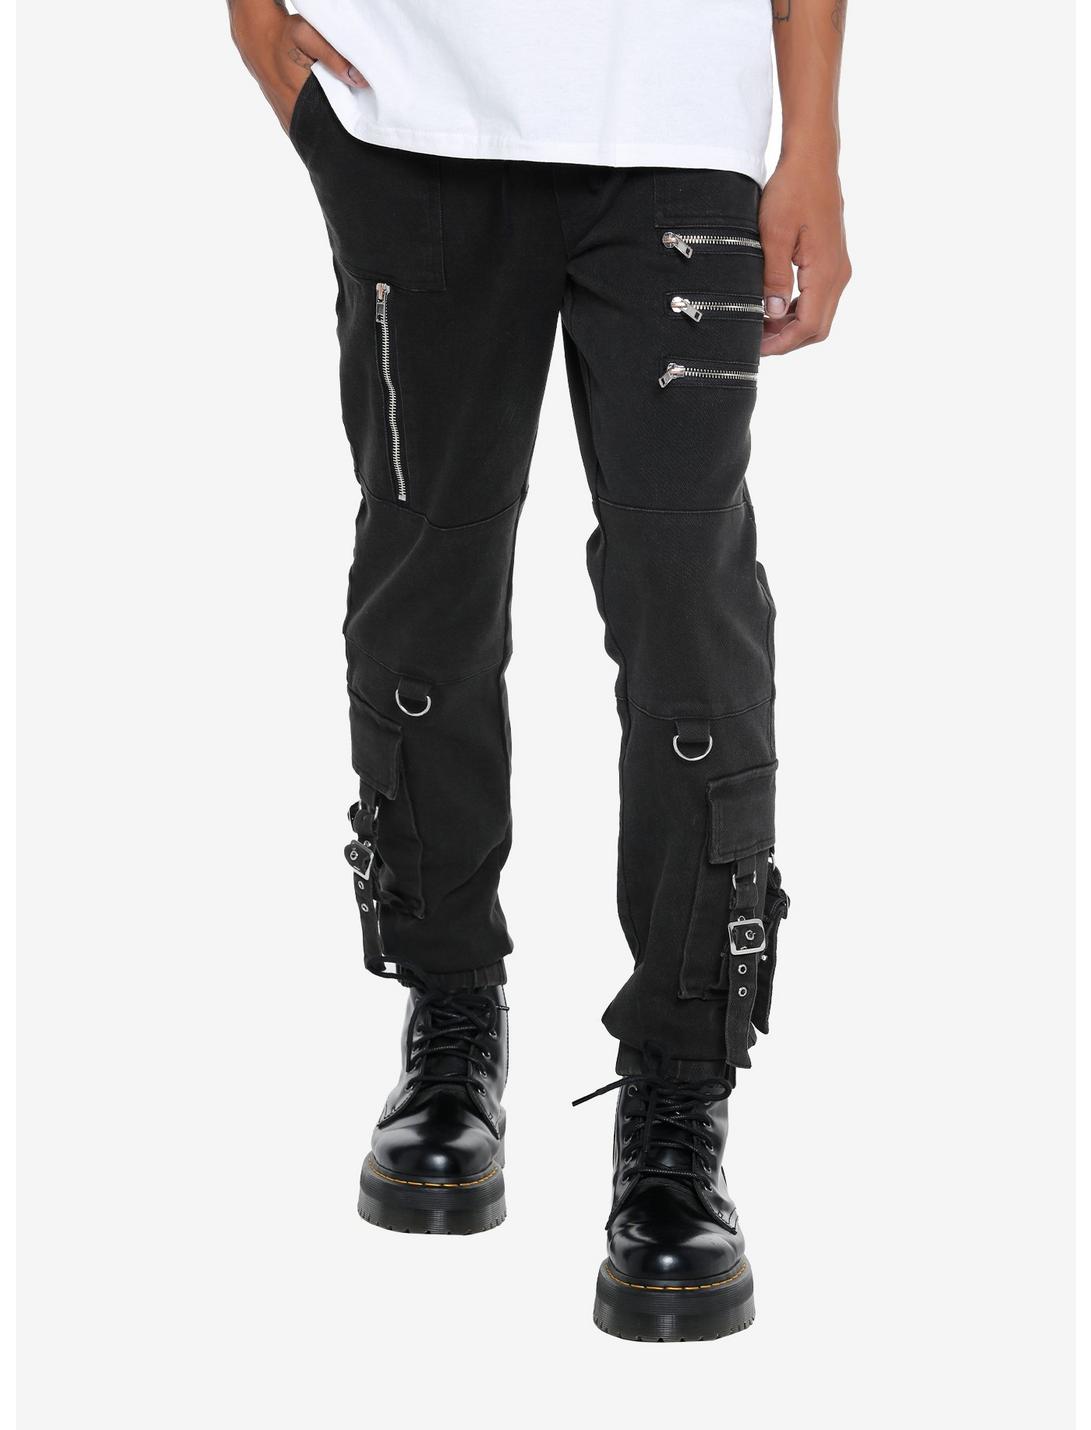 Black Grommet Straps & Zippers Jogger Pants, BLACK, hi-res